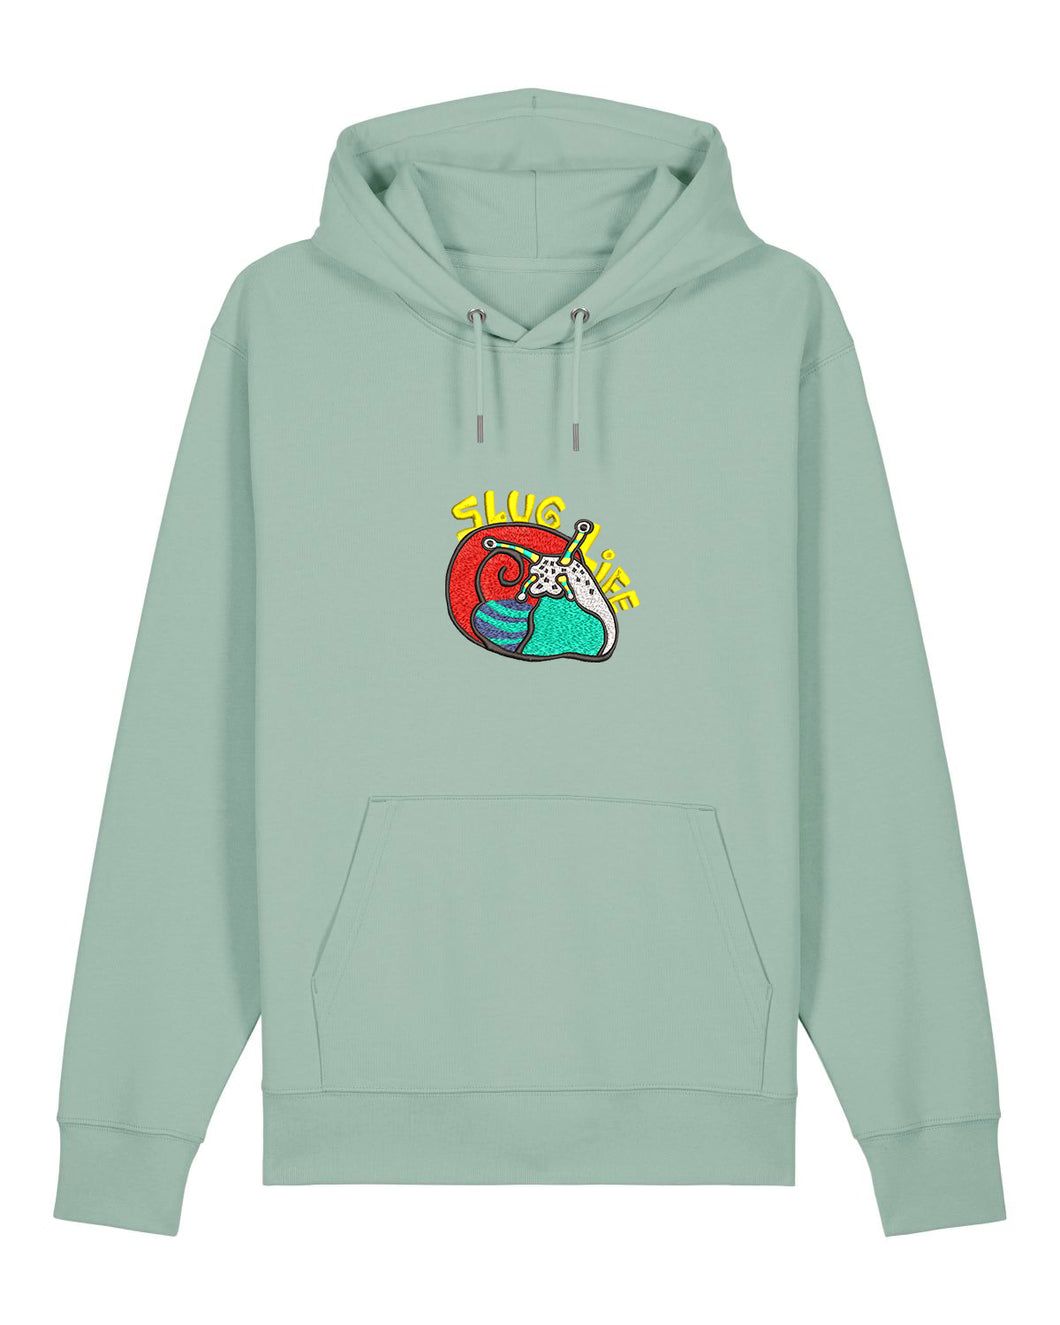 Slug life 🐌- Embroidered UNISEX hoodie